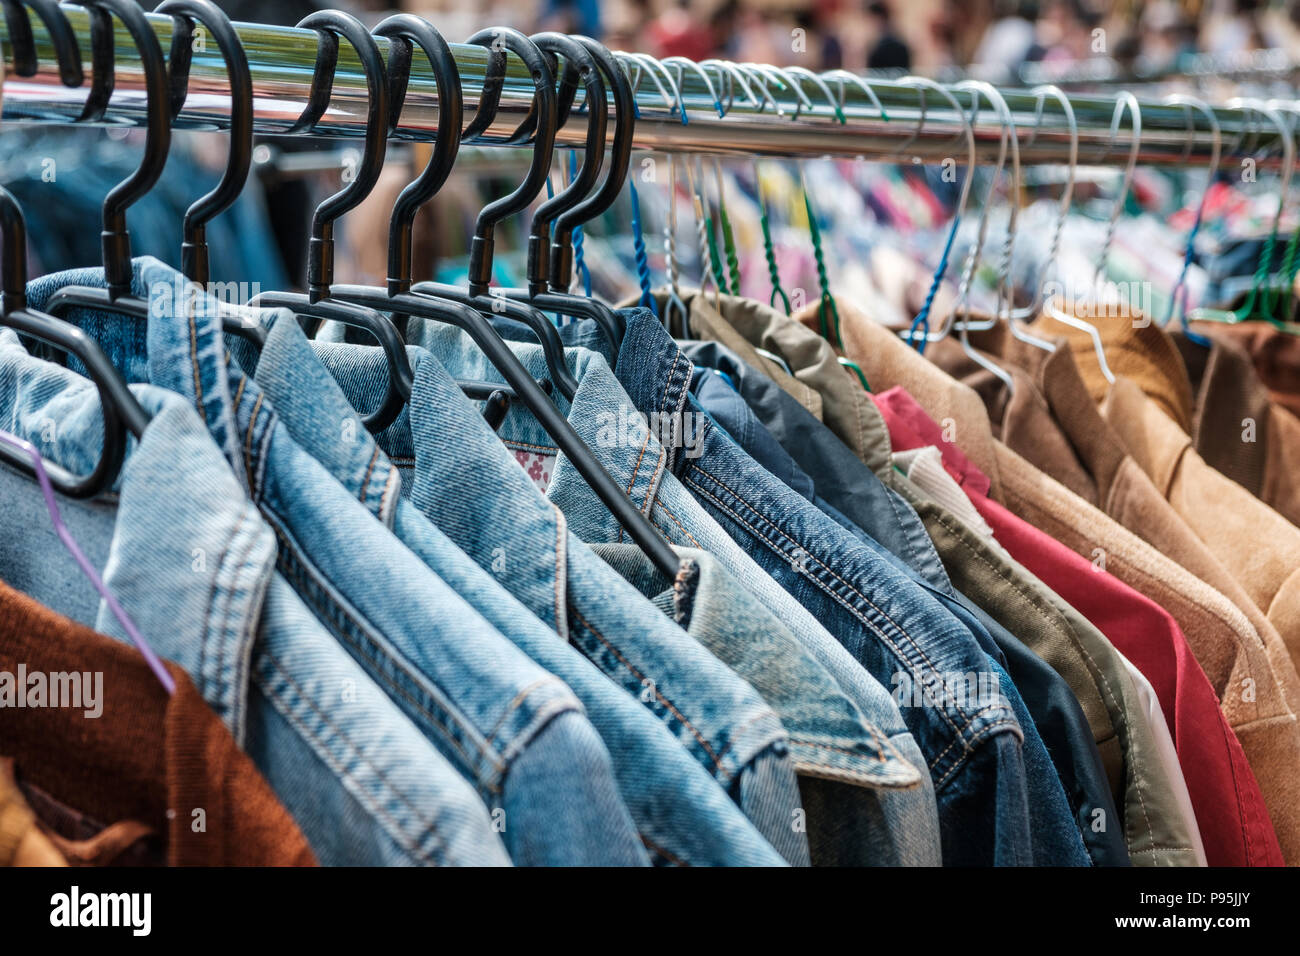 Les blousons et jeans chemises rétro main onsecond marché / brocante - Vêtements vintage - Banque D'Images